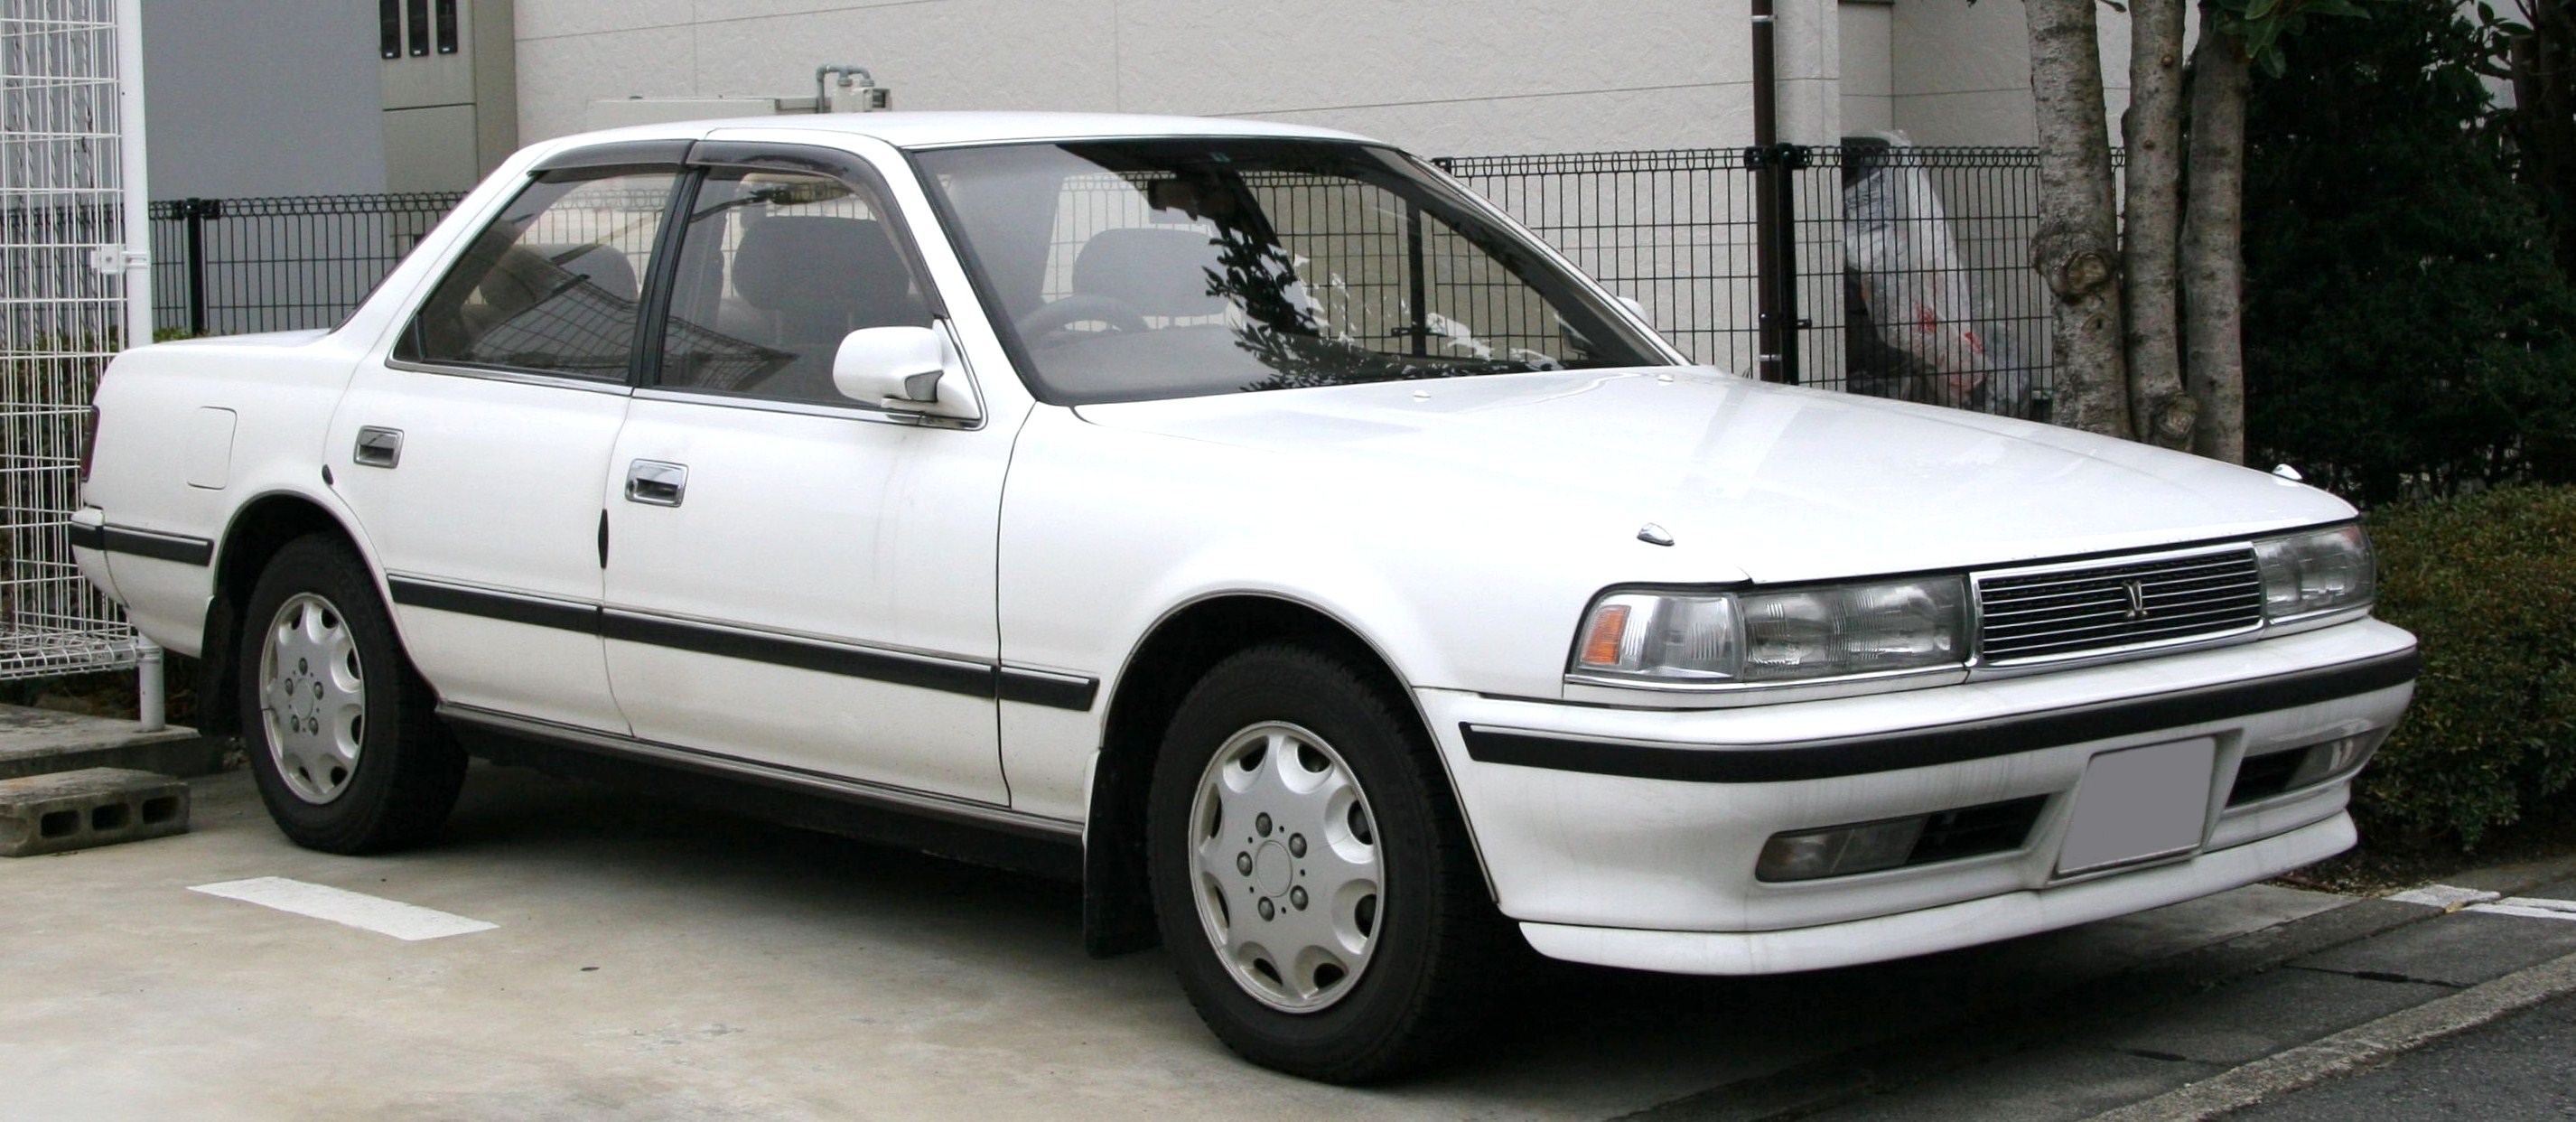 Toyota Chaser IV (X80) 1988 - 1992 Sedan #4